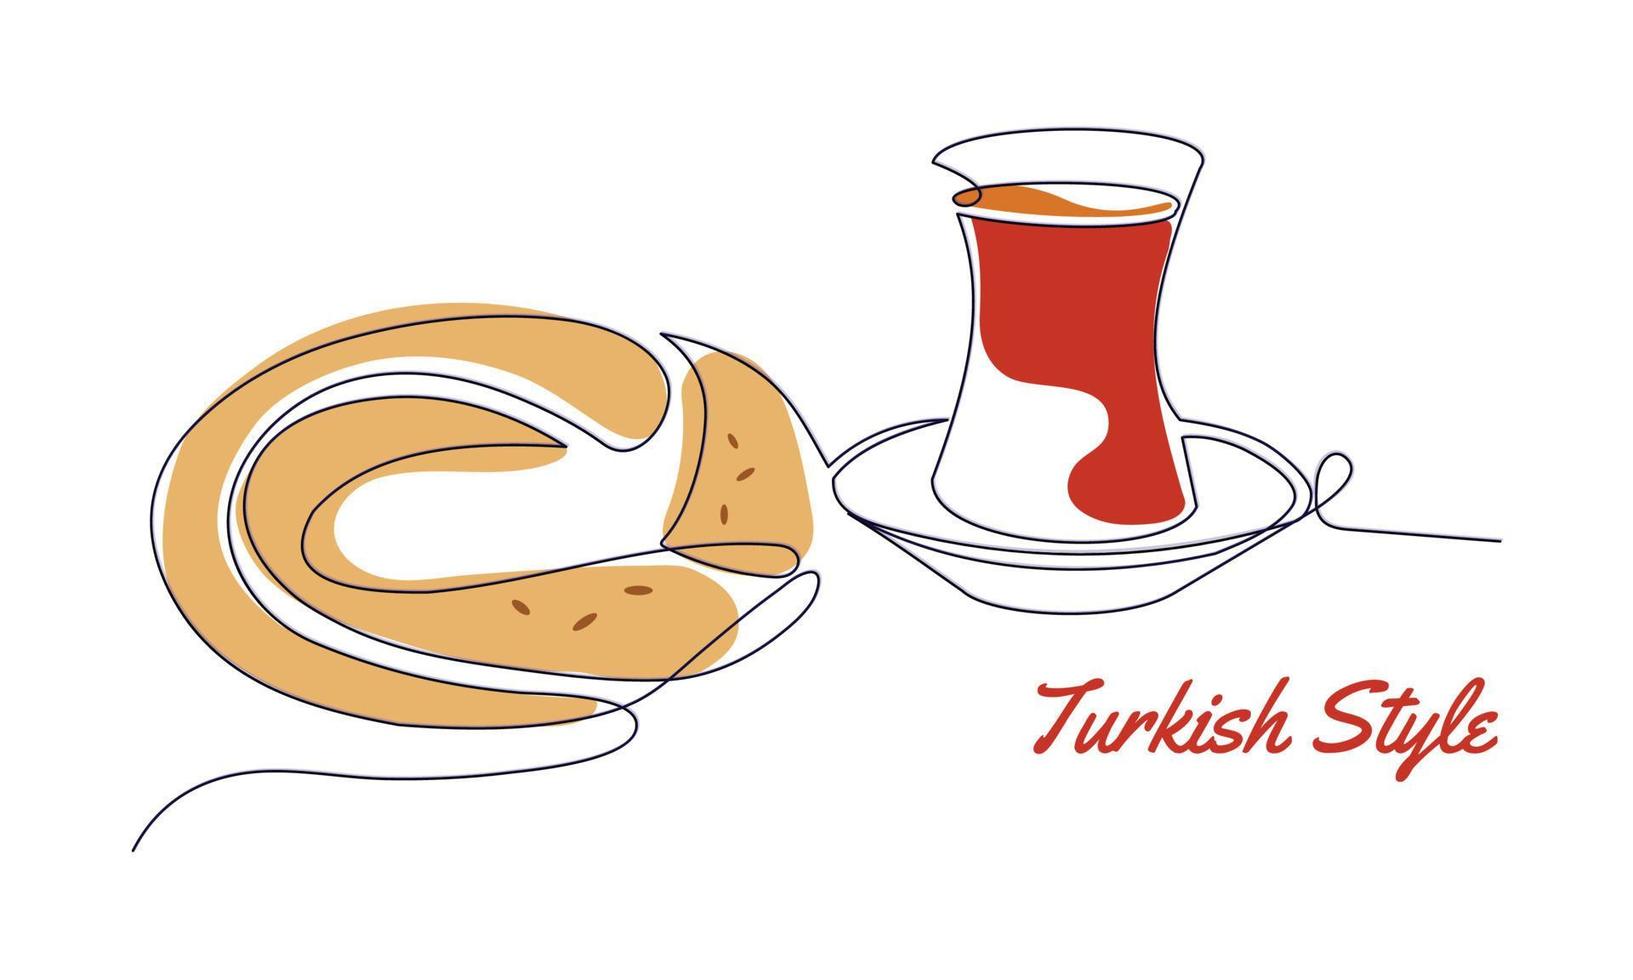 colazione tradizionale turca. tè e simit o bagel turco. vettore un'arte lineare continua con testo in stile turco. elementi isolati per banner, logo o social media.